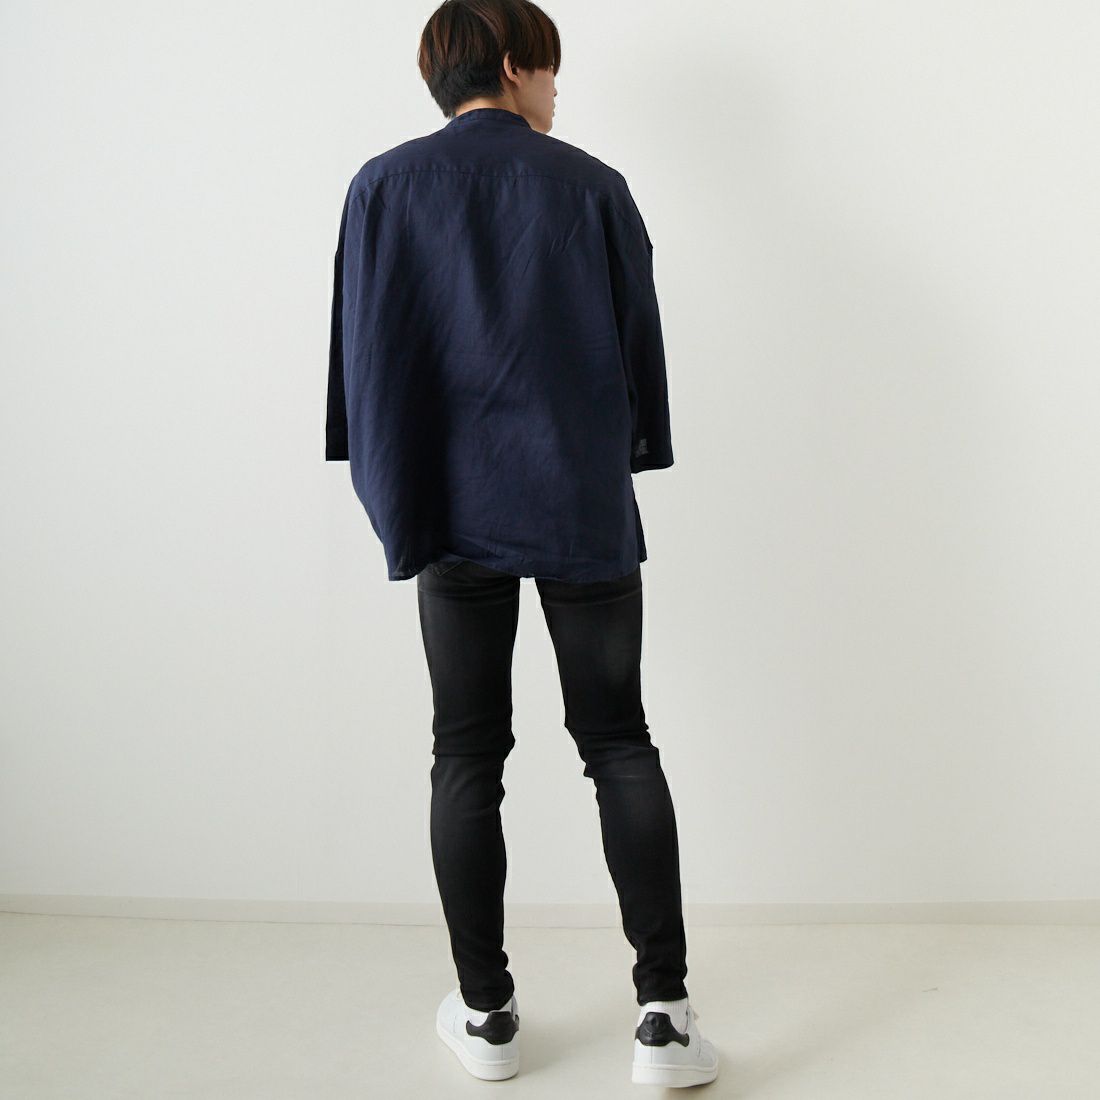 Jeans Factory Clothes [ジーンズファクトリークローズ] フレンチリネンワイドバンドカラーシャツ [BFP513] 540 NAVY &&モデル身長：169cm 着用サイズ：L&&